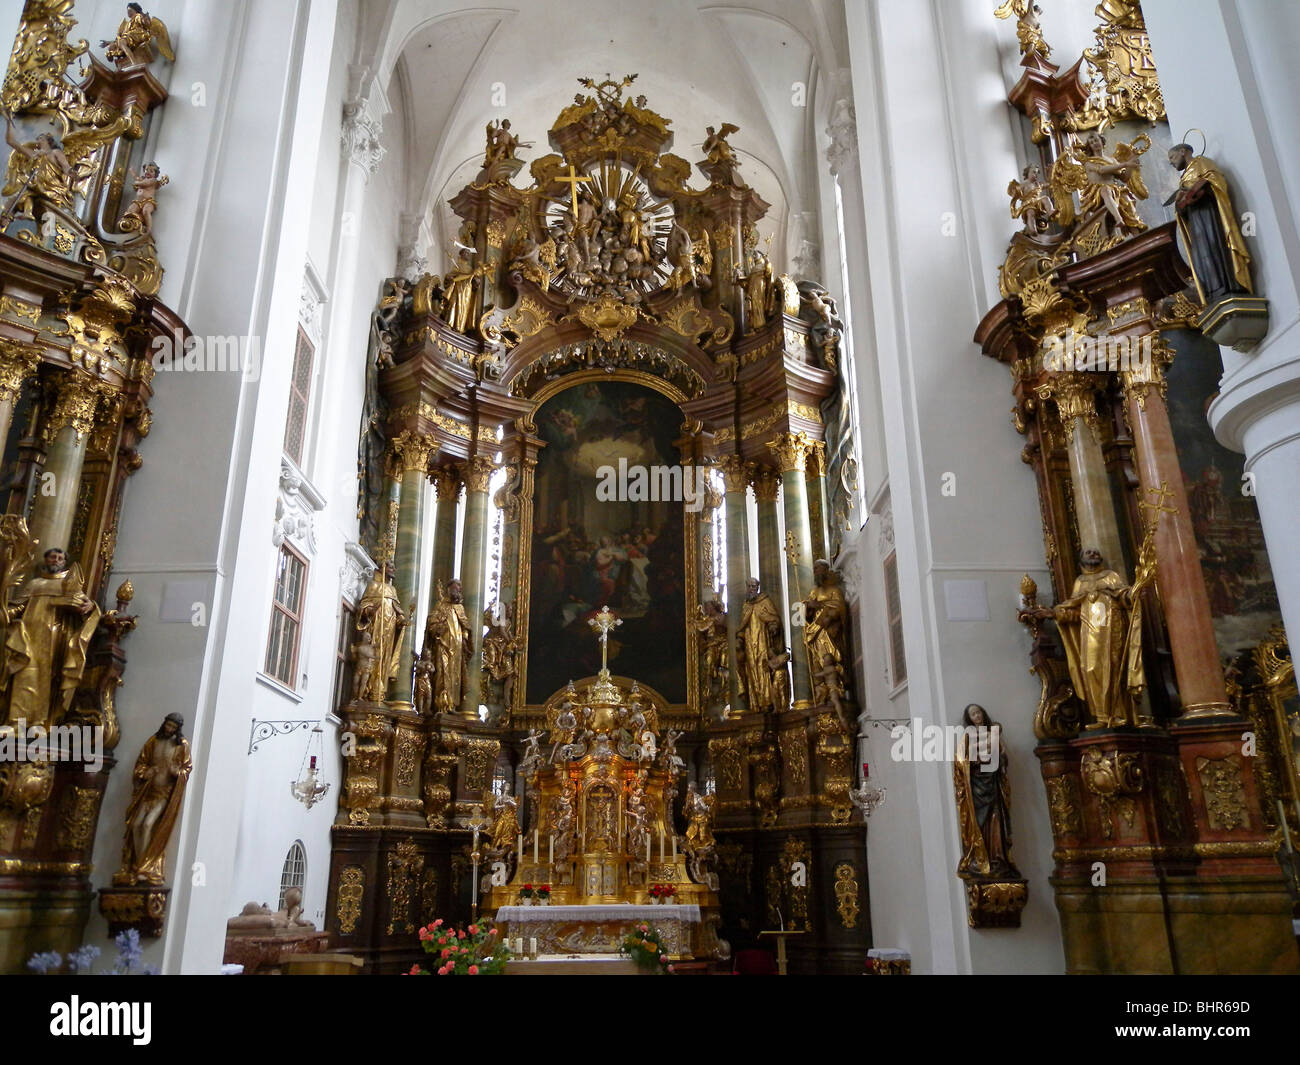 interior of Karmeliterkirche, Straubing, Bavaria, Germany Stock Photo